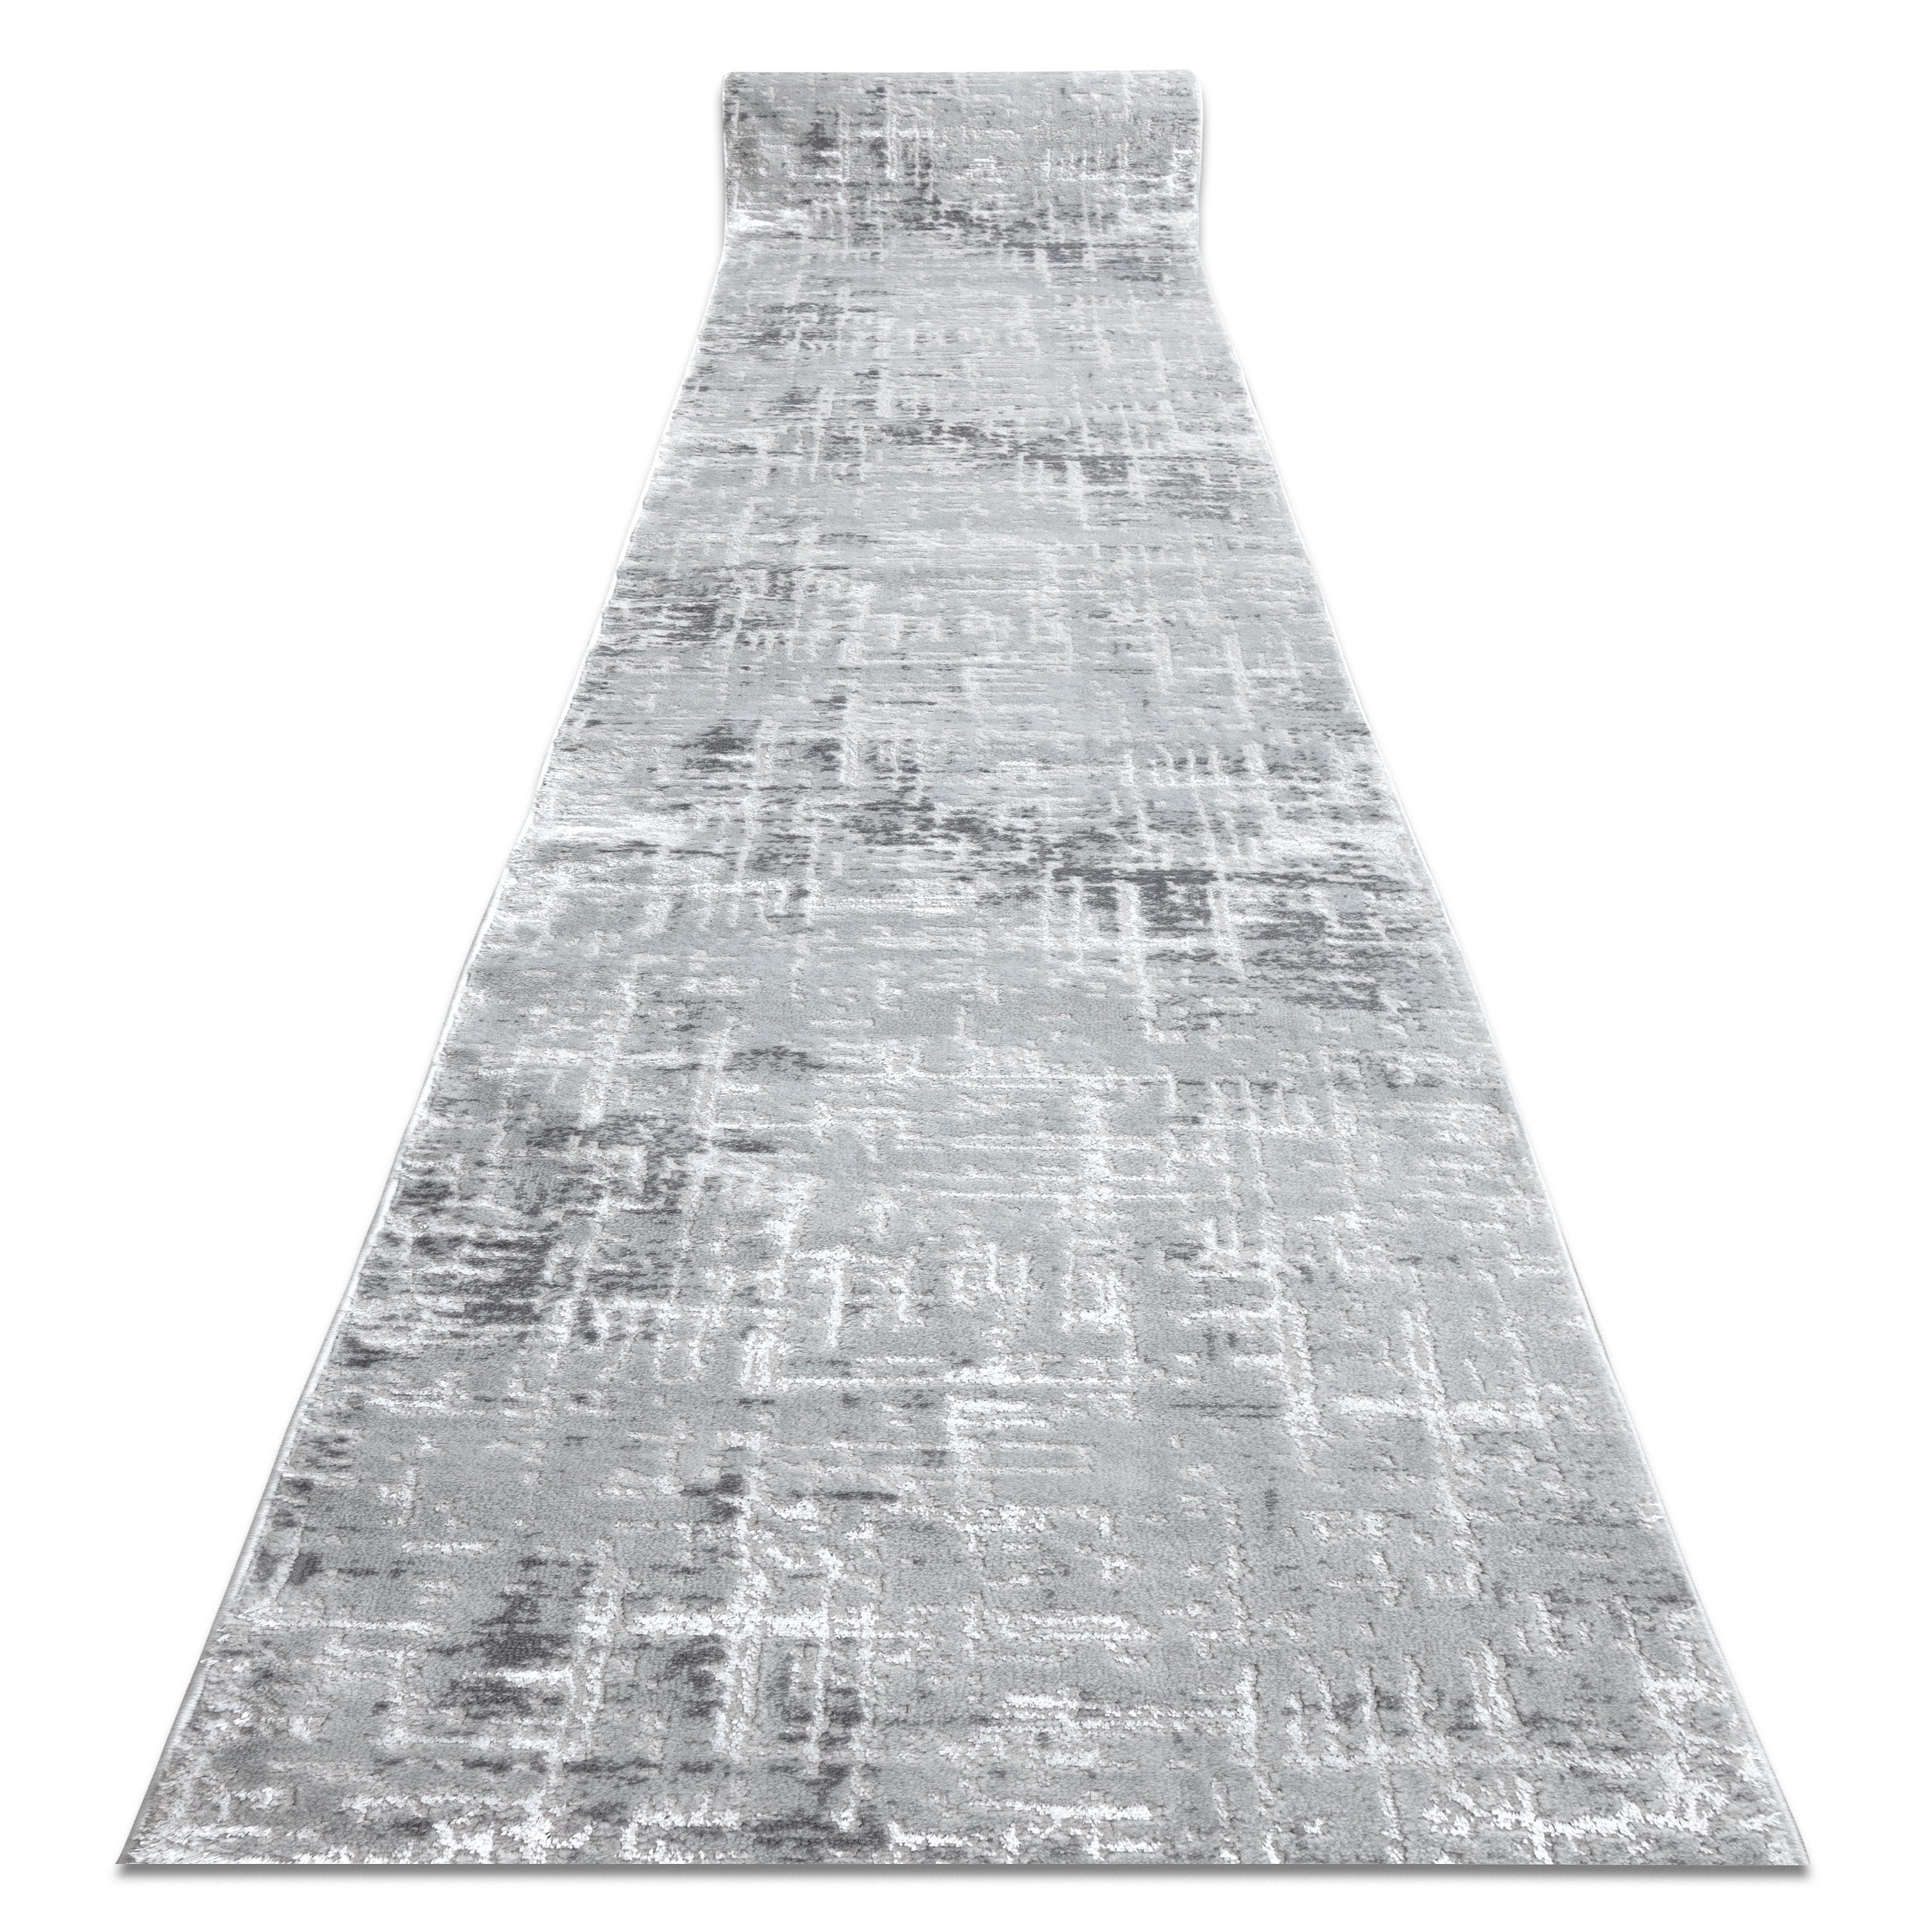 Alfombra de pasillo Structural MEFE 6182 dos niveles de vellón gris -  Alfombras de pasillo modernas